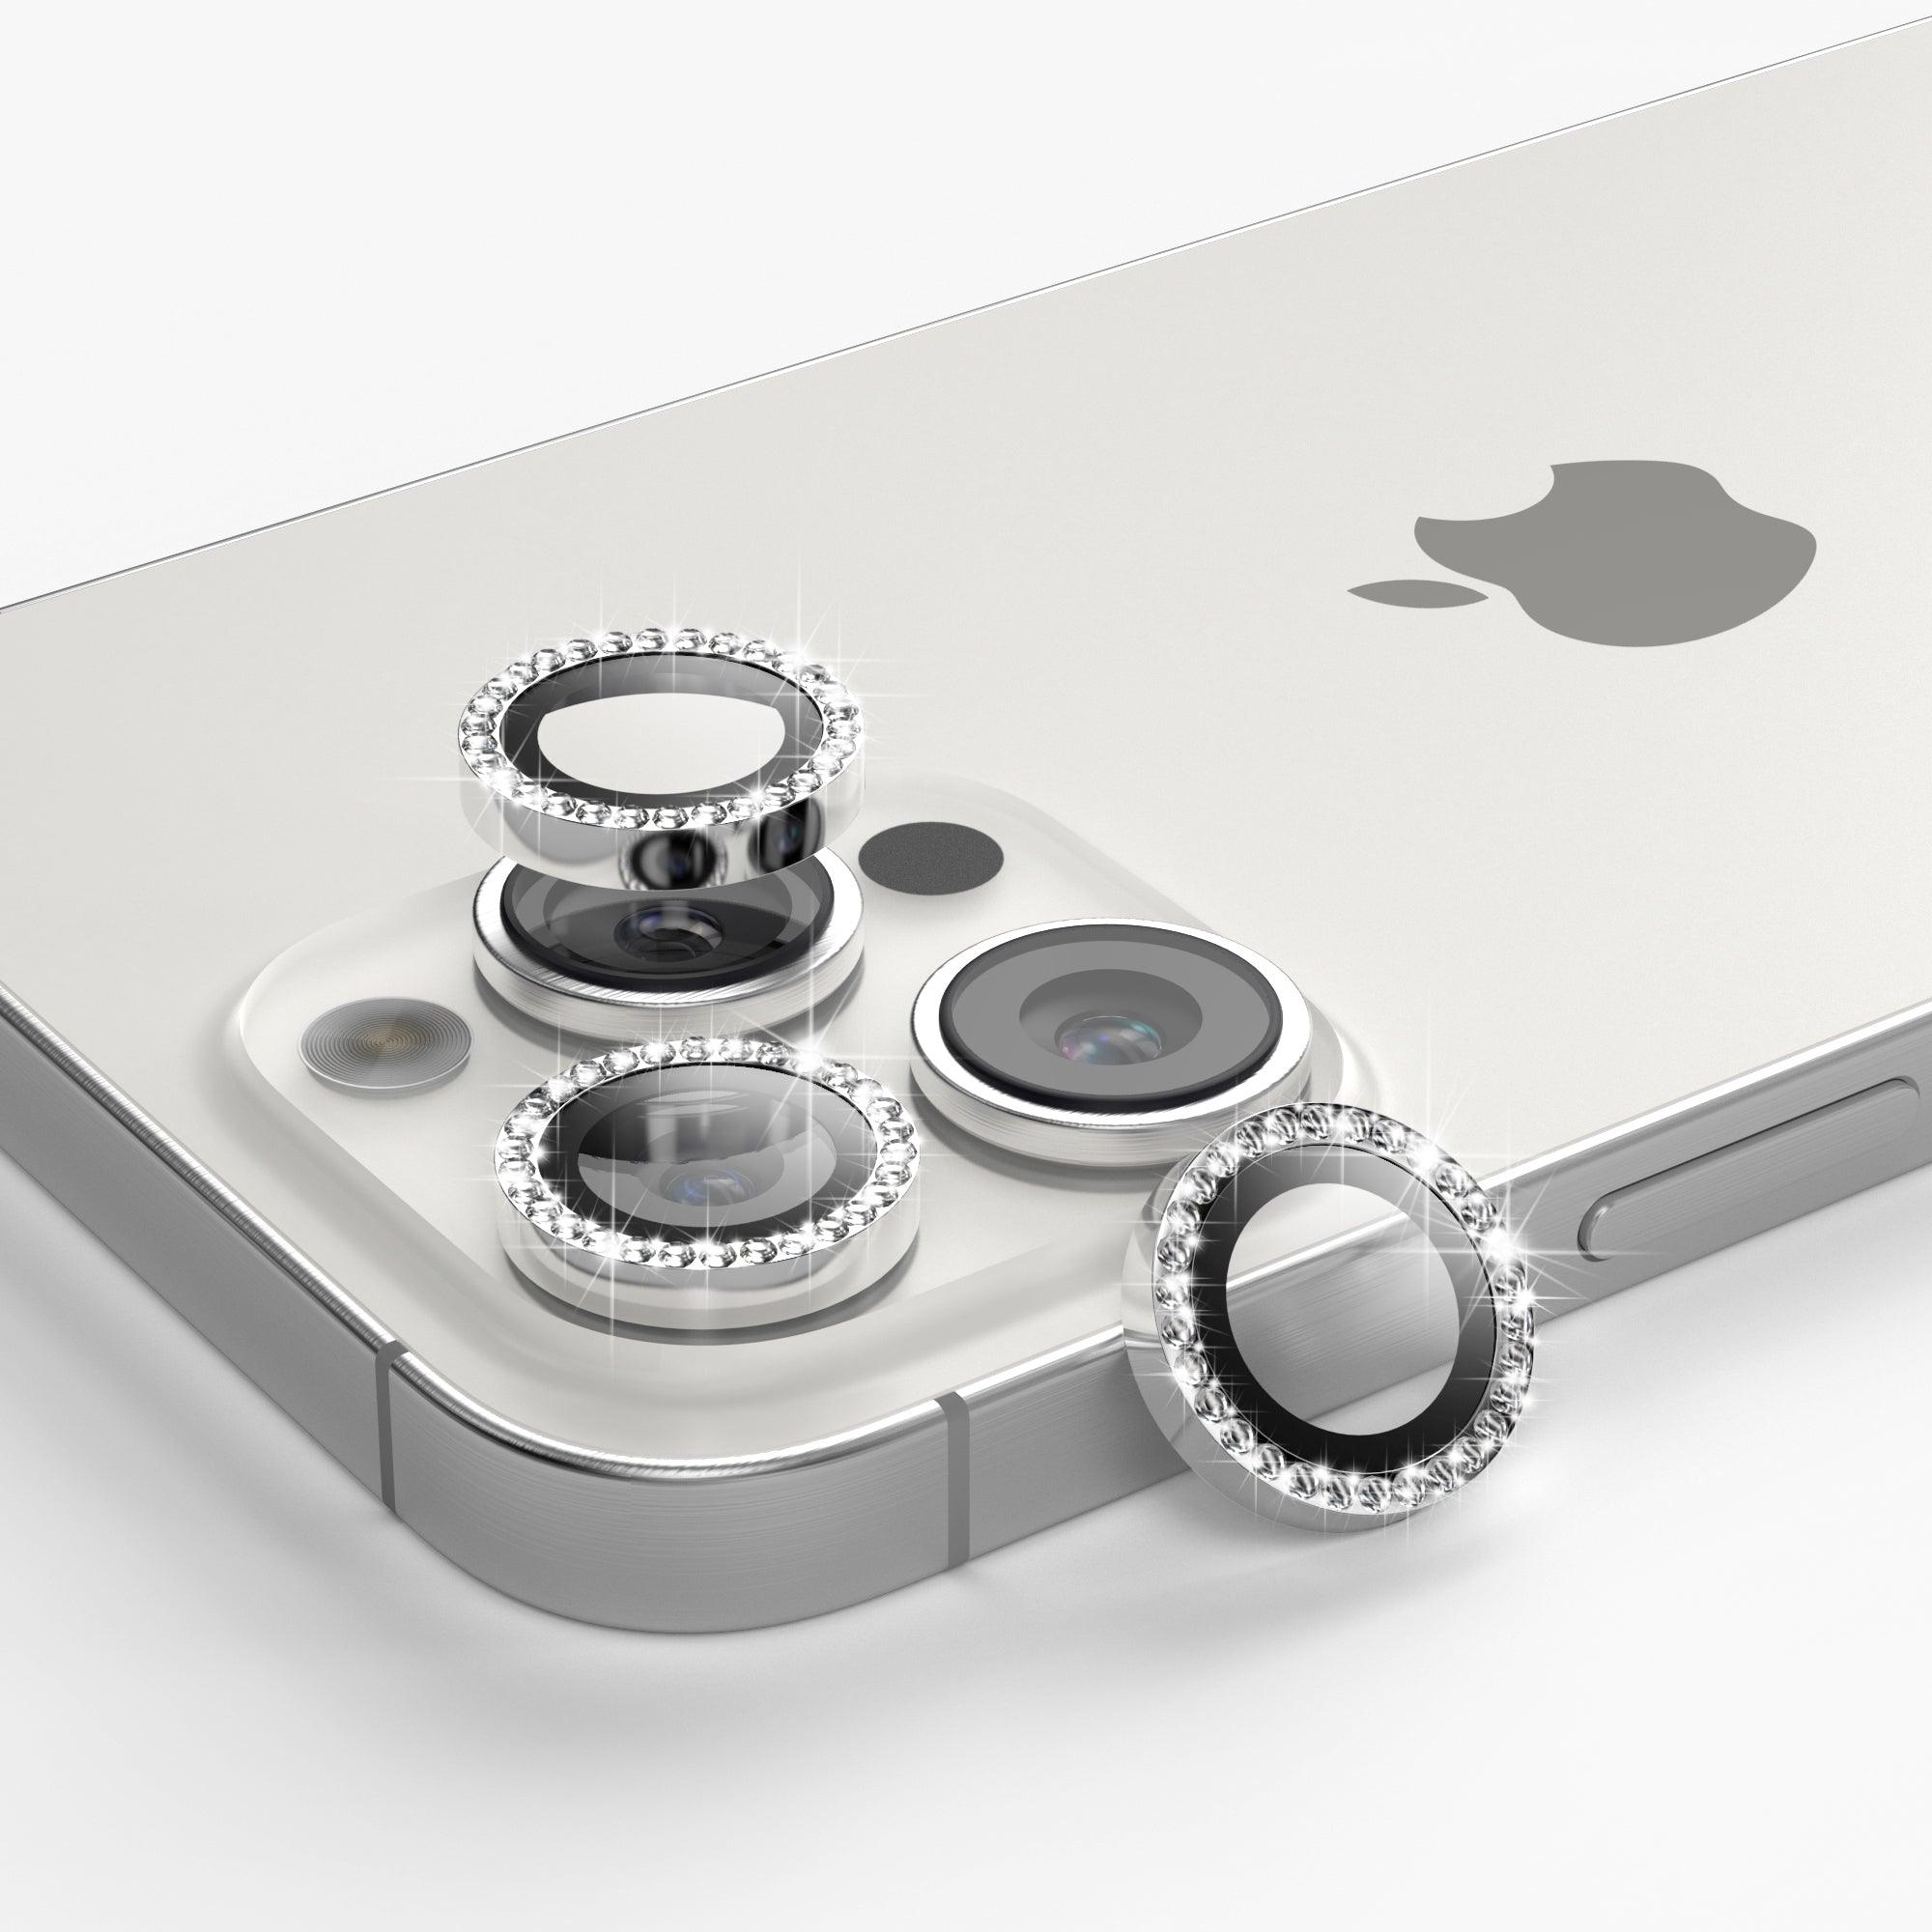 iPhone 13 Pro Max キラキラカメラレンズ保護カバー - CORECOLOUR